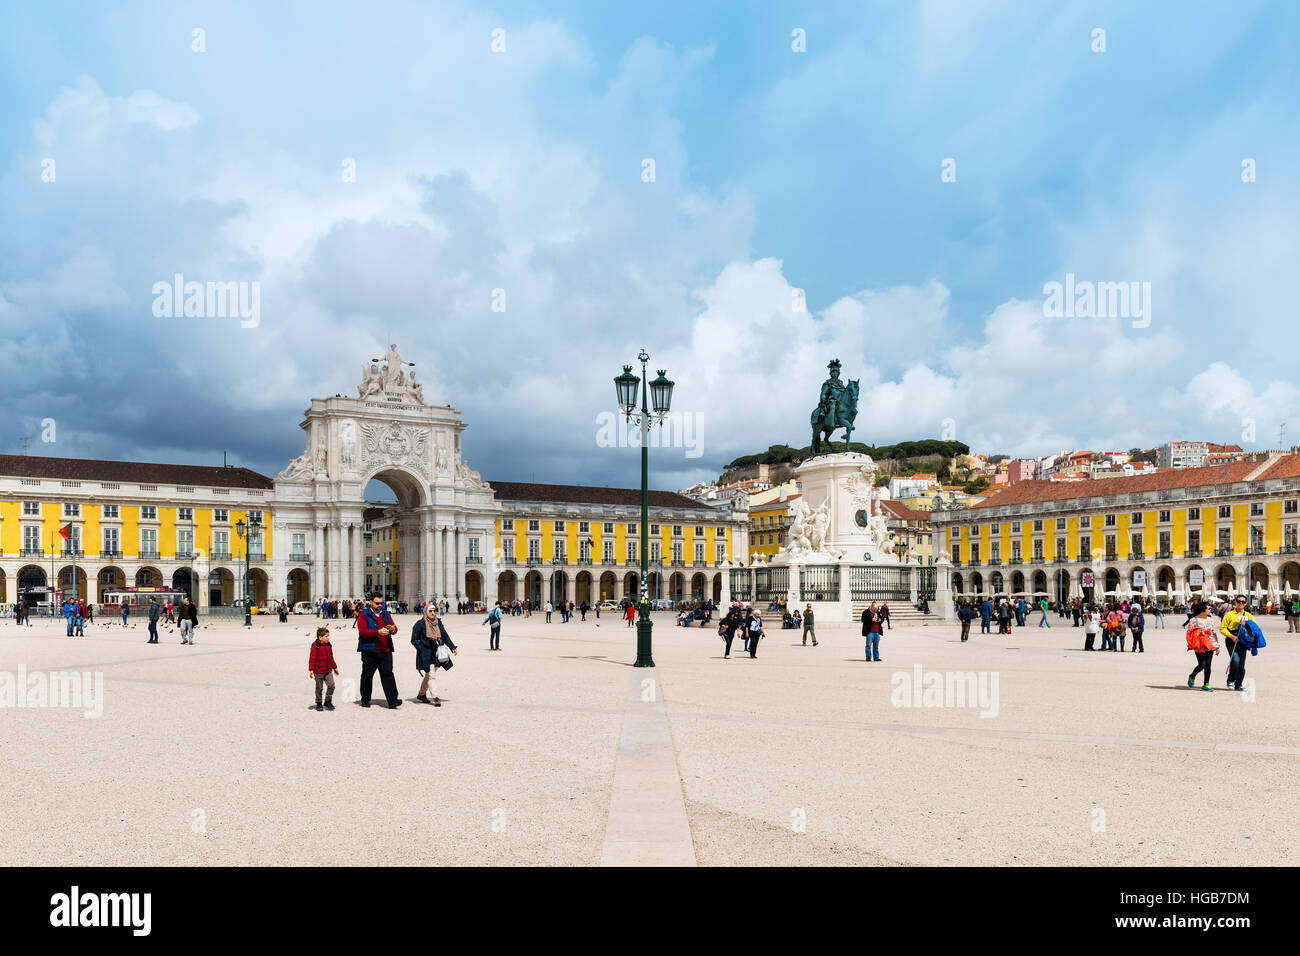 Lisbon, Portugal - March 19, 2016: View of the Comercio Square (Praça do Comércio) in Lisbon, Portugal Stock Photo